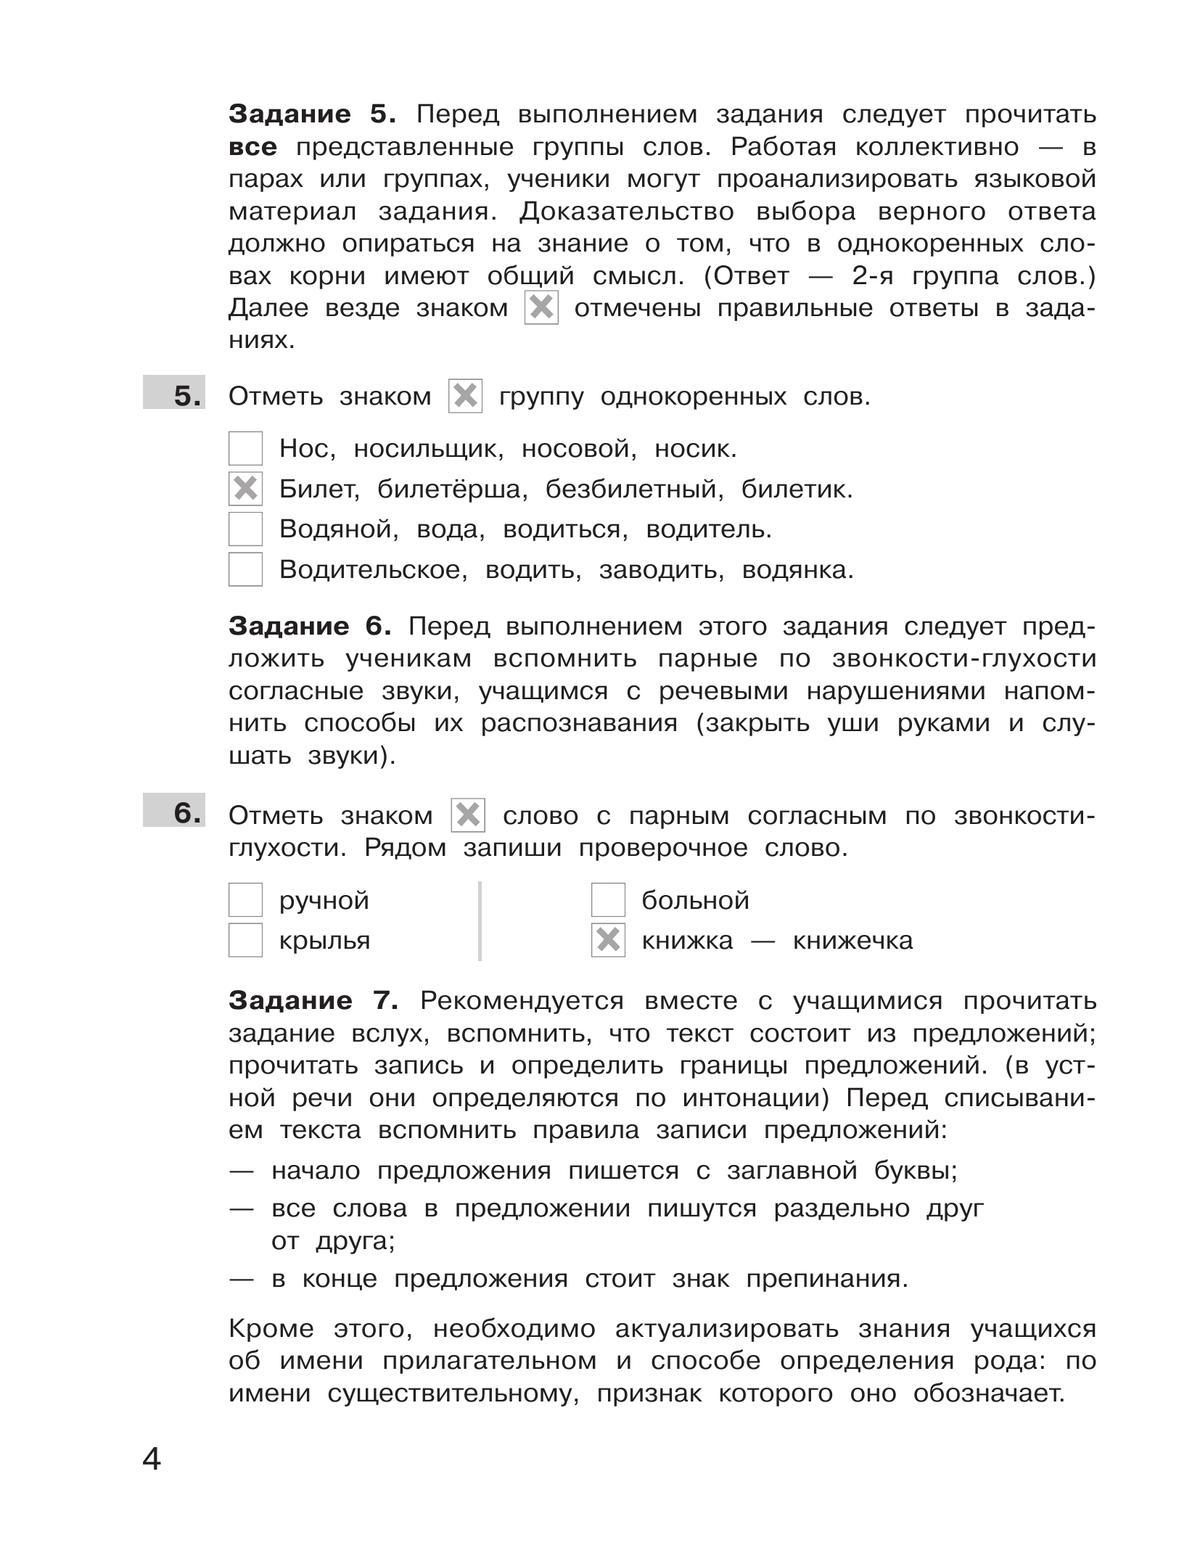 Подготовка к Всероссийской проверочной работе по русскому языку. 2 класс 5